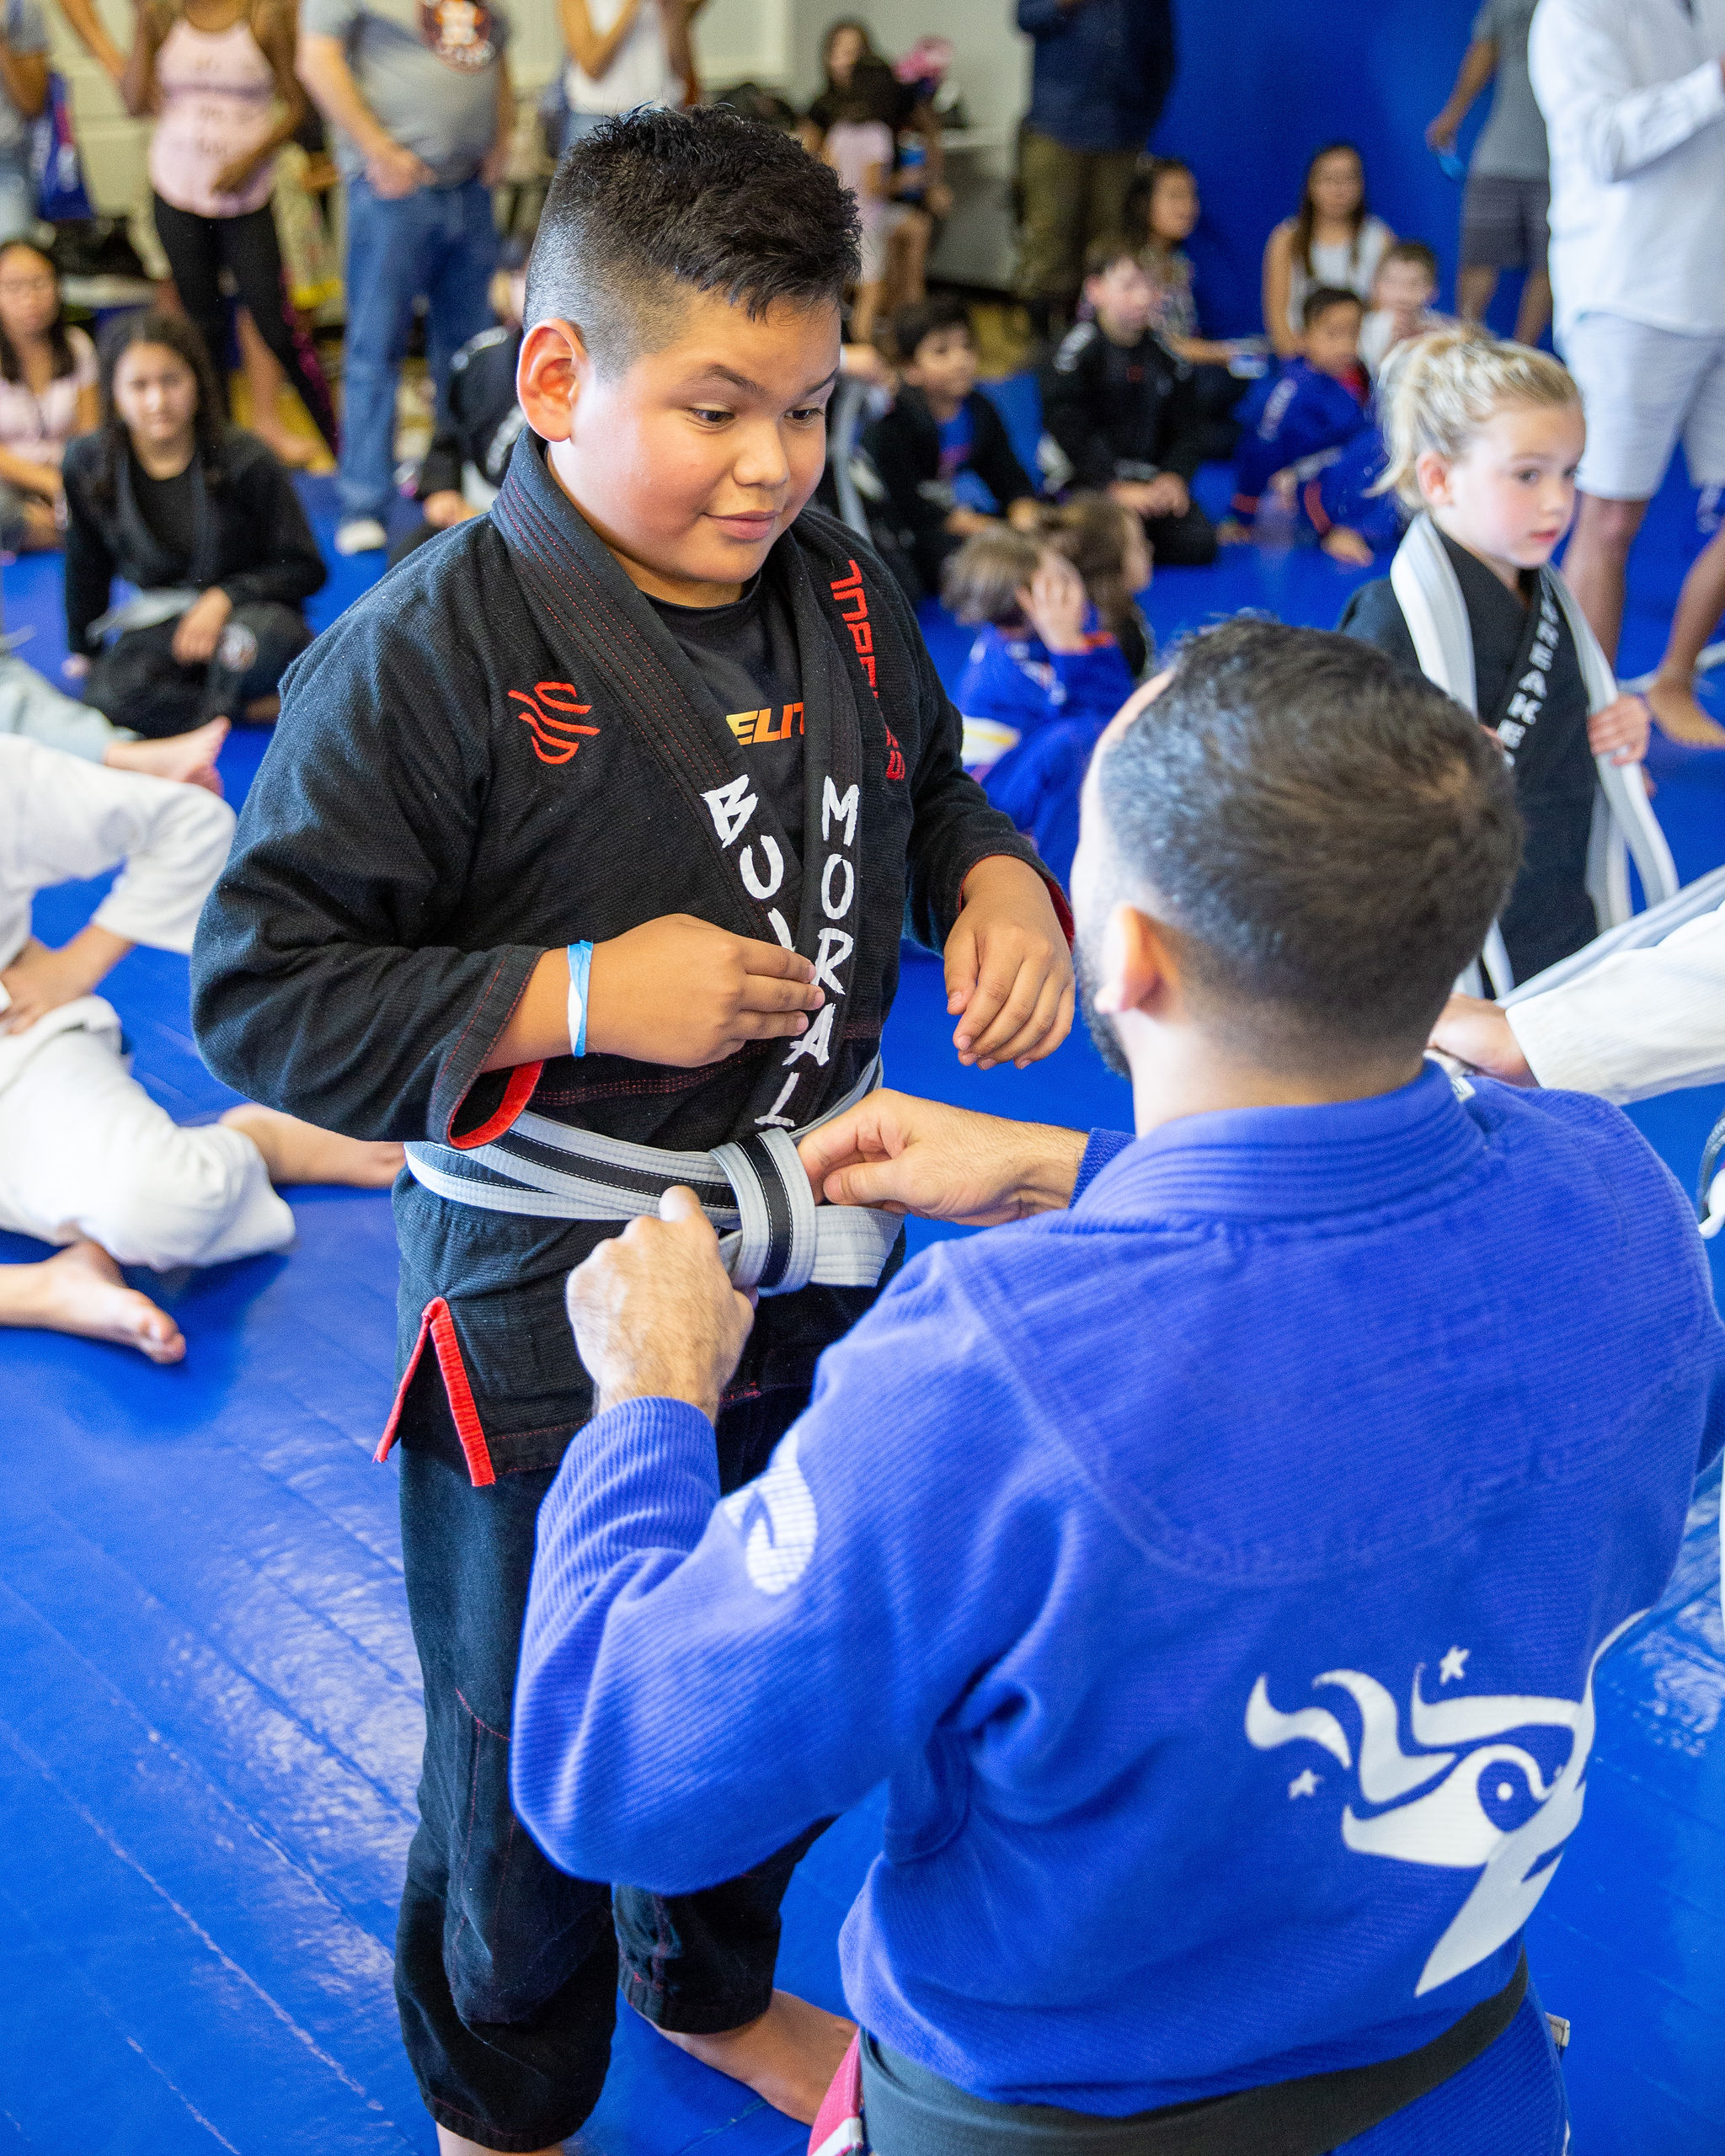 Top 10 Reasons Brazilian Jiu Jitsu Is Beneficial for Children